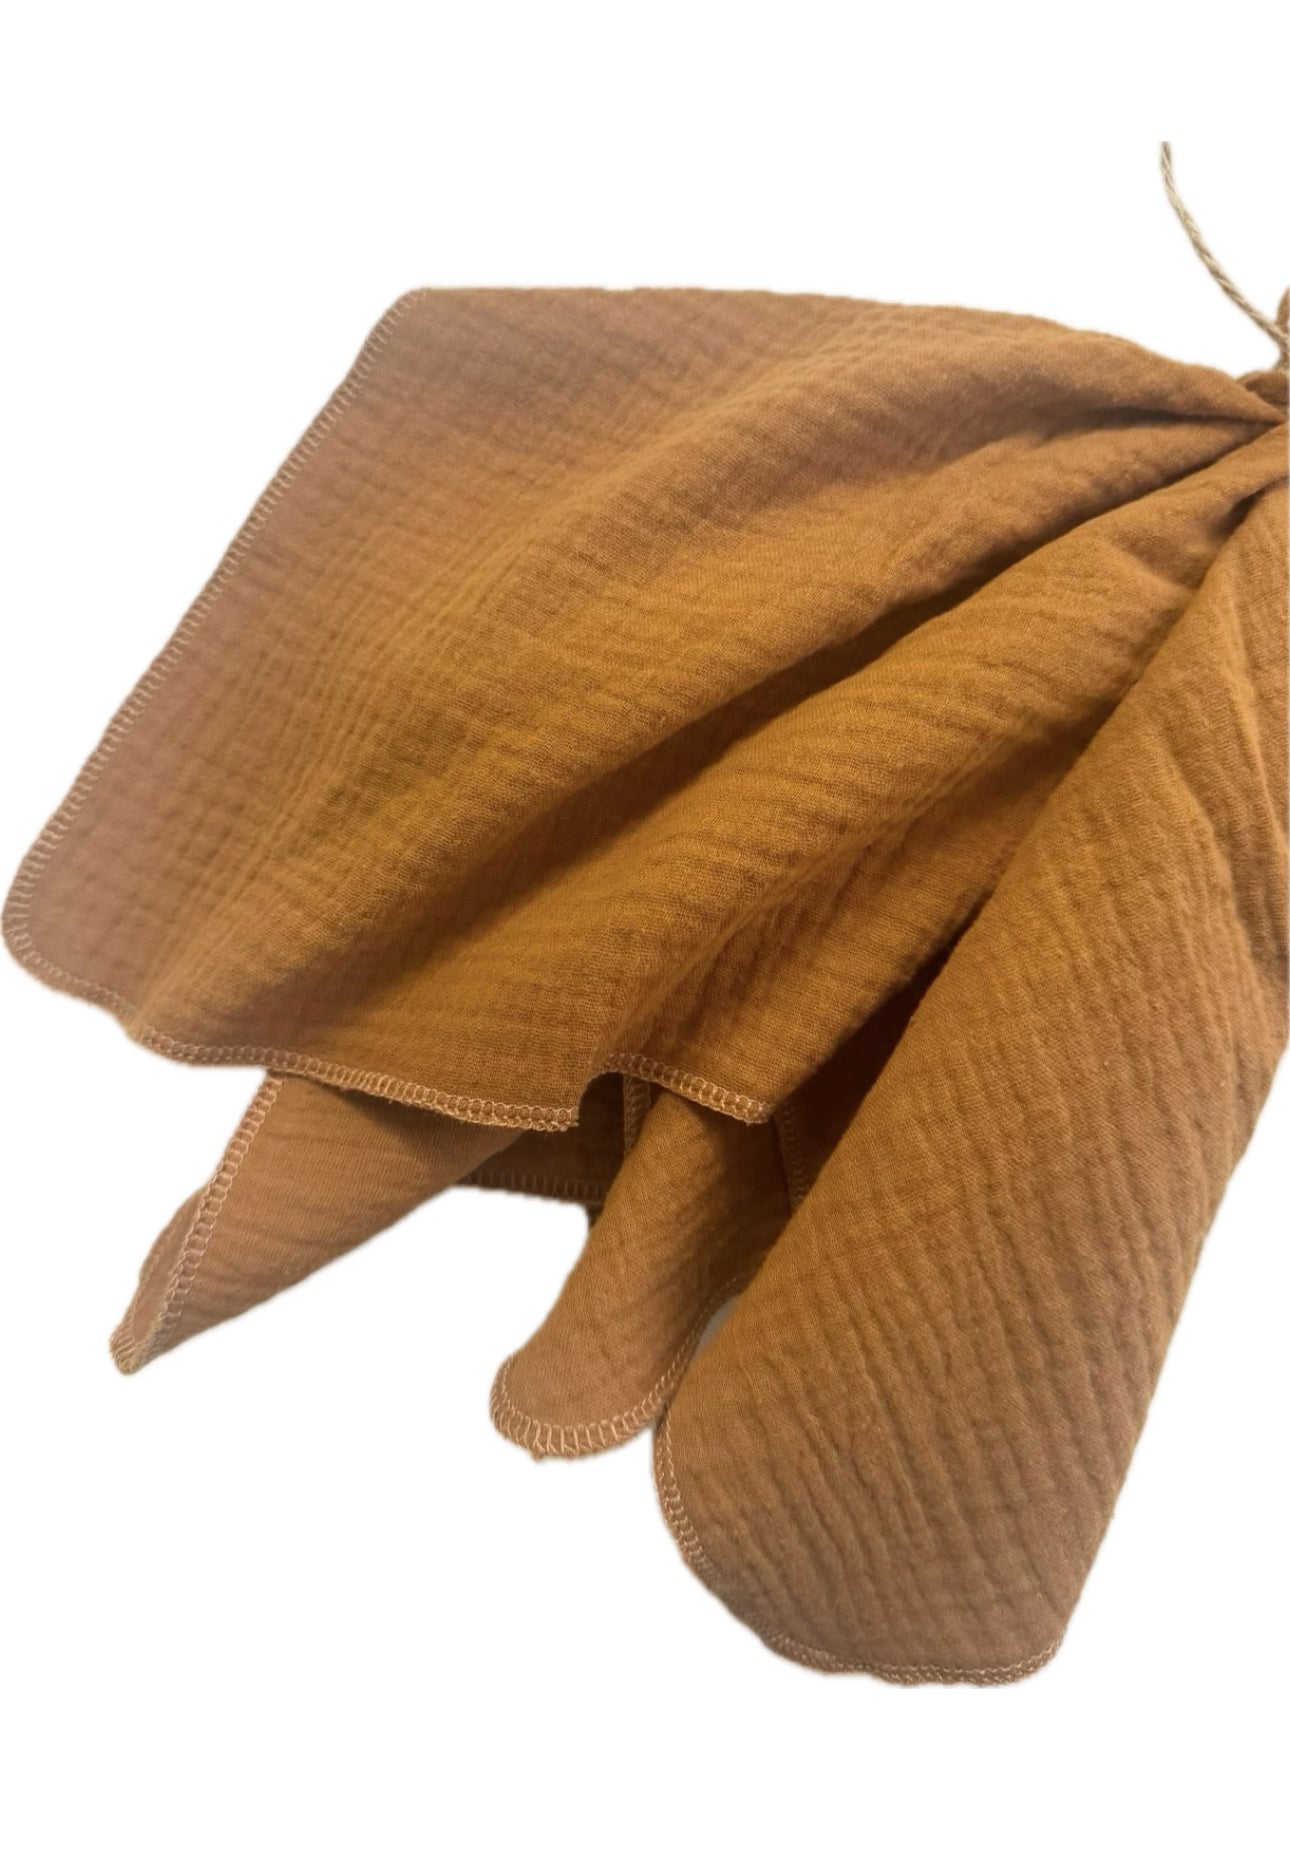 Stoffserviette aus Musselin | 43cmx43cm | Öko Tex 100 | 100% Baumwolle